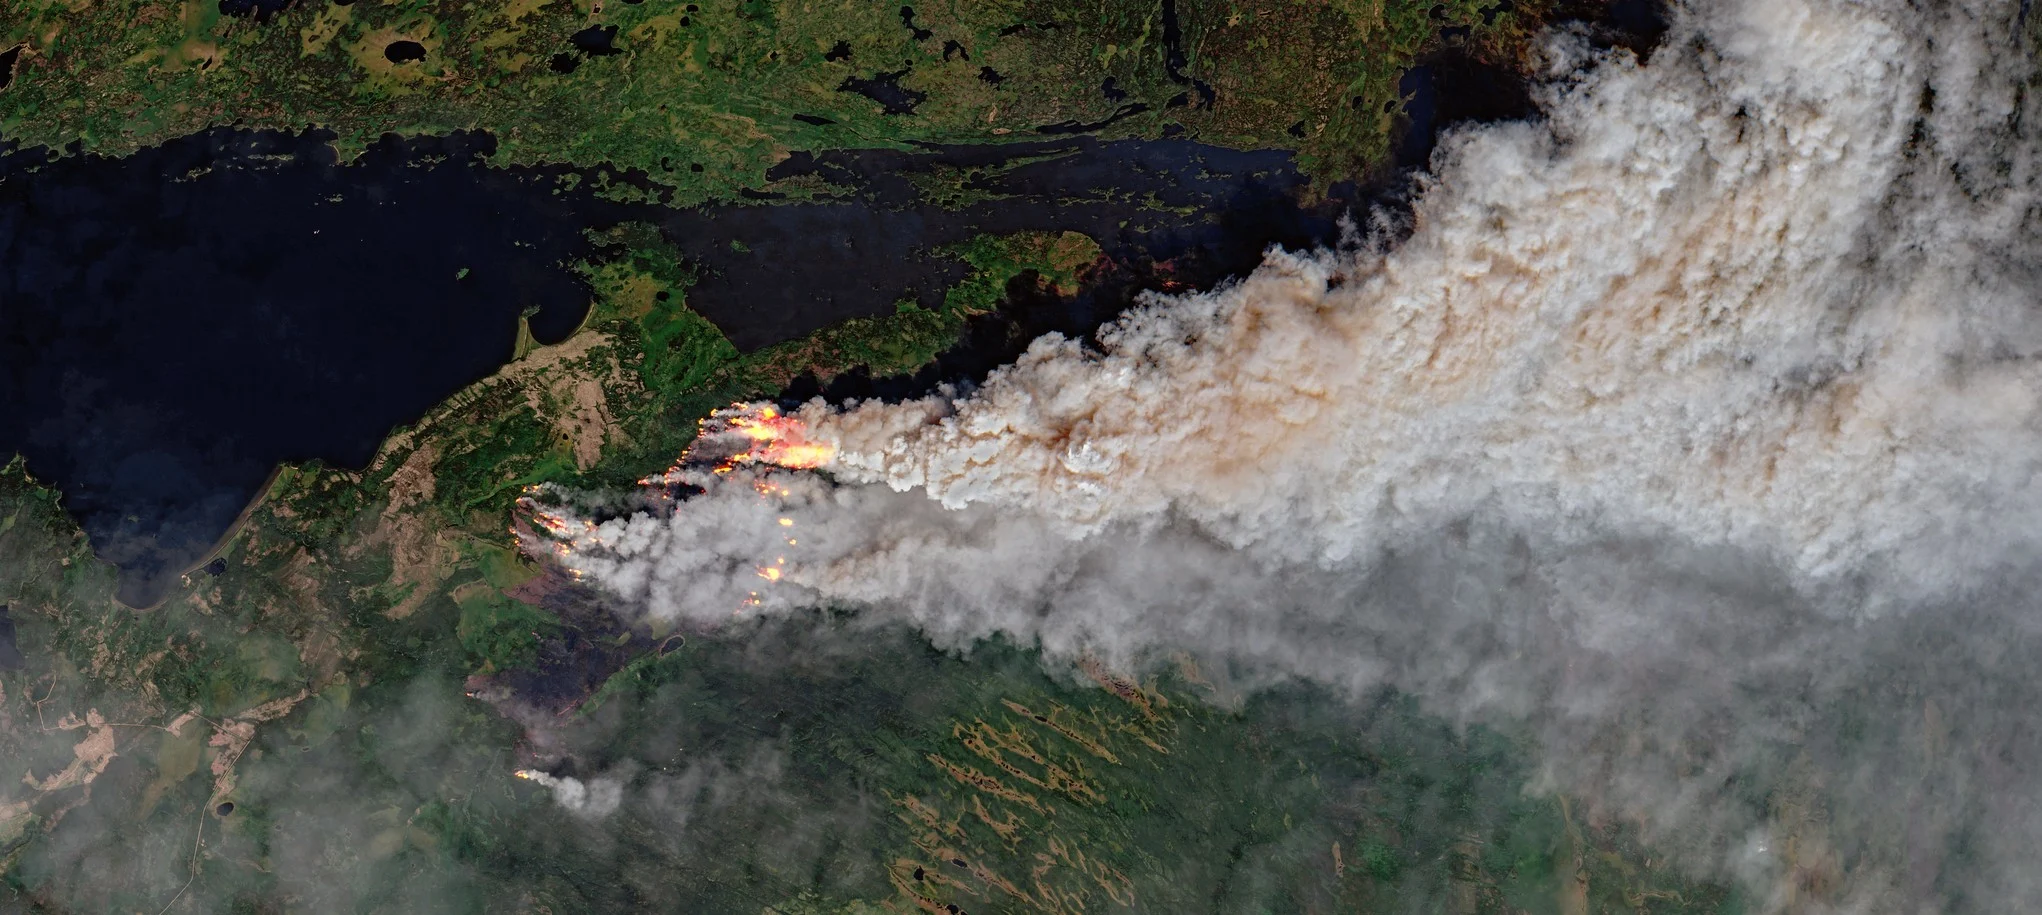 Les forêts boréales nord-américaines brûlent gros, mais moins qu’il y a 150 ans